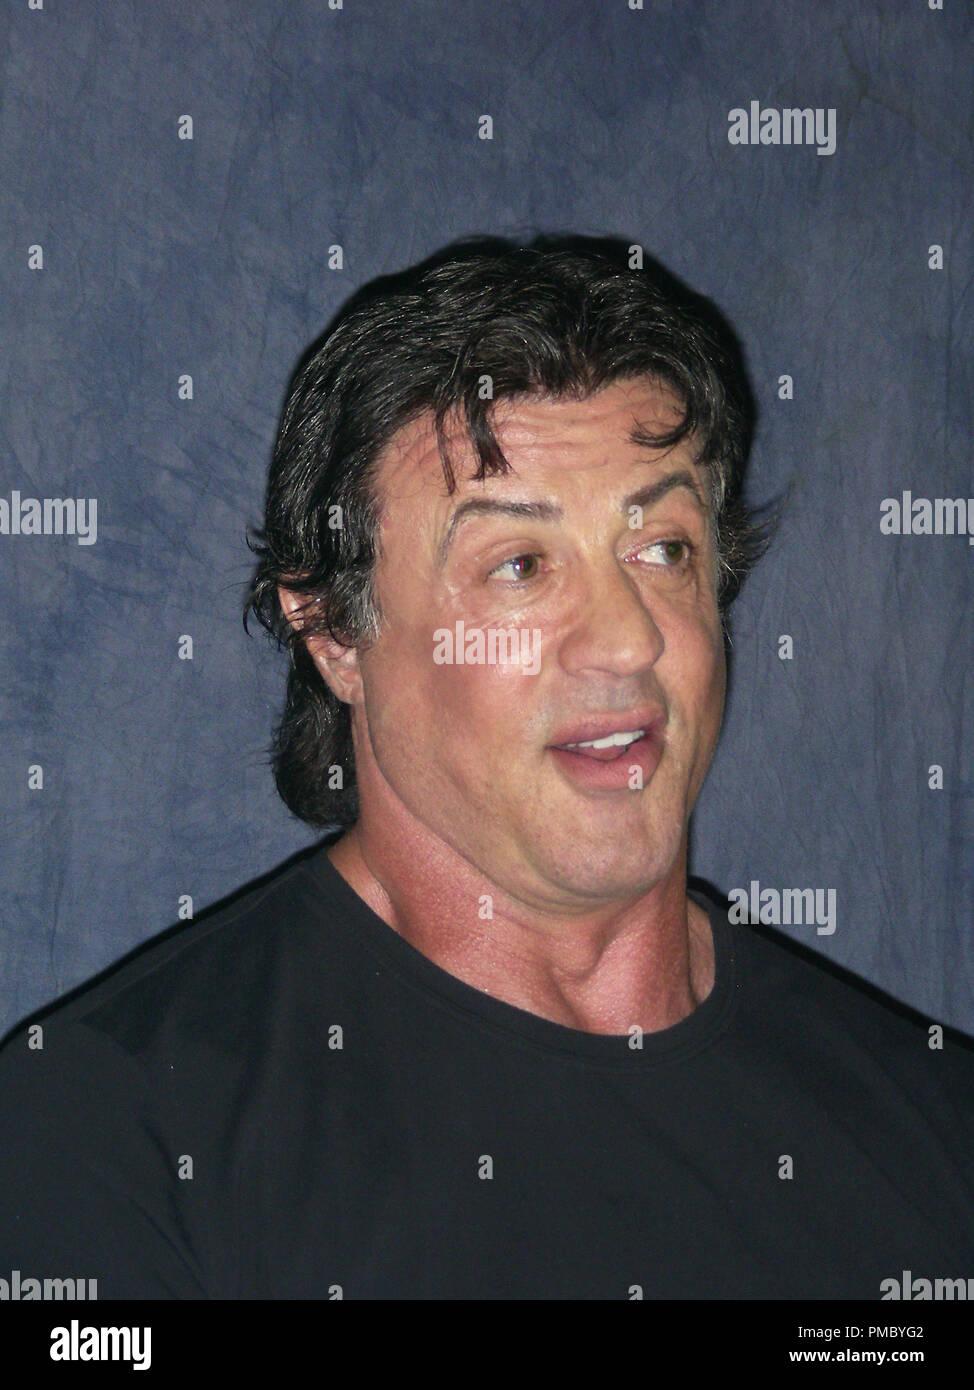 Pressekonferenz Portrait von Sylvester Stallone 11/07/2006 © GFS Photo Library/Hollywood Archiv (alle Rechte vorbehalten) Datei Referenz # 33480 017 THA Stockfoto